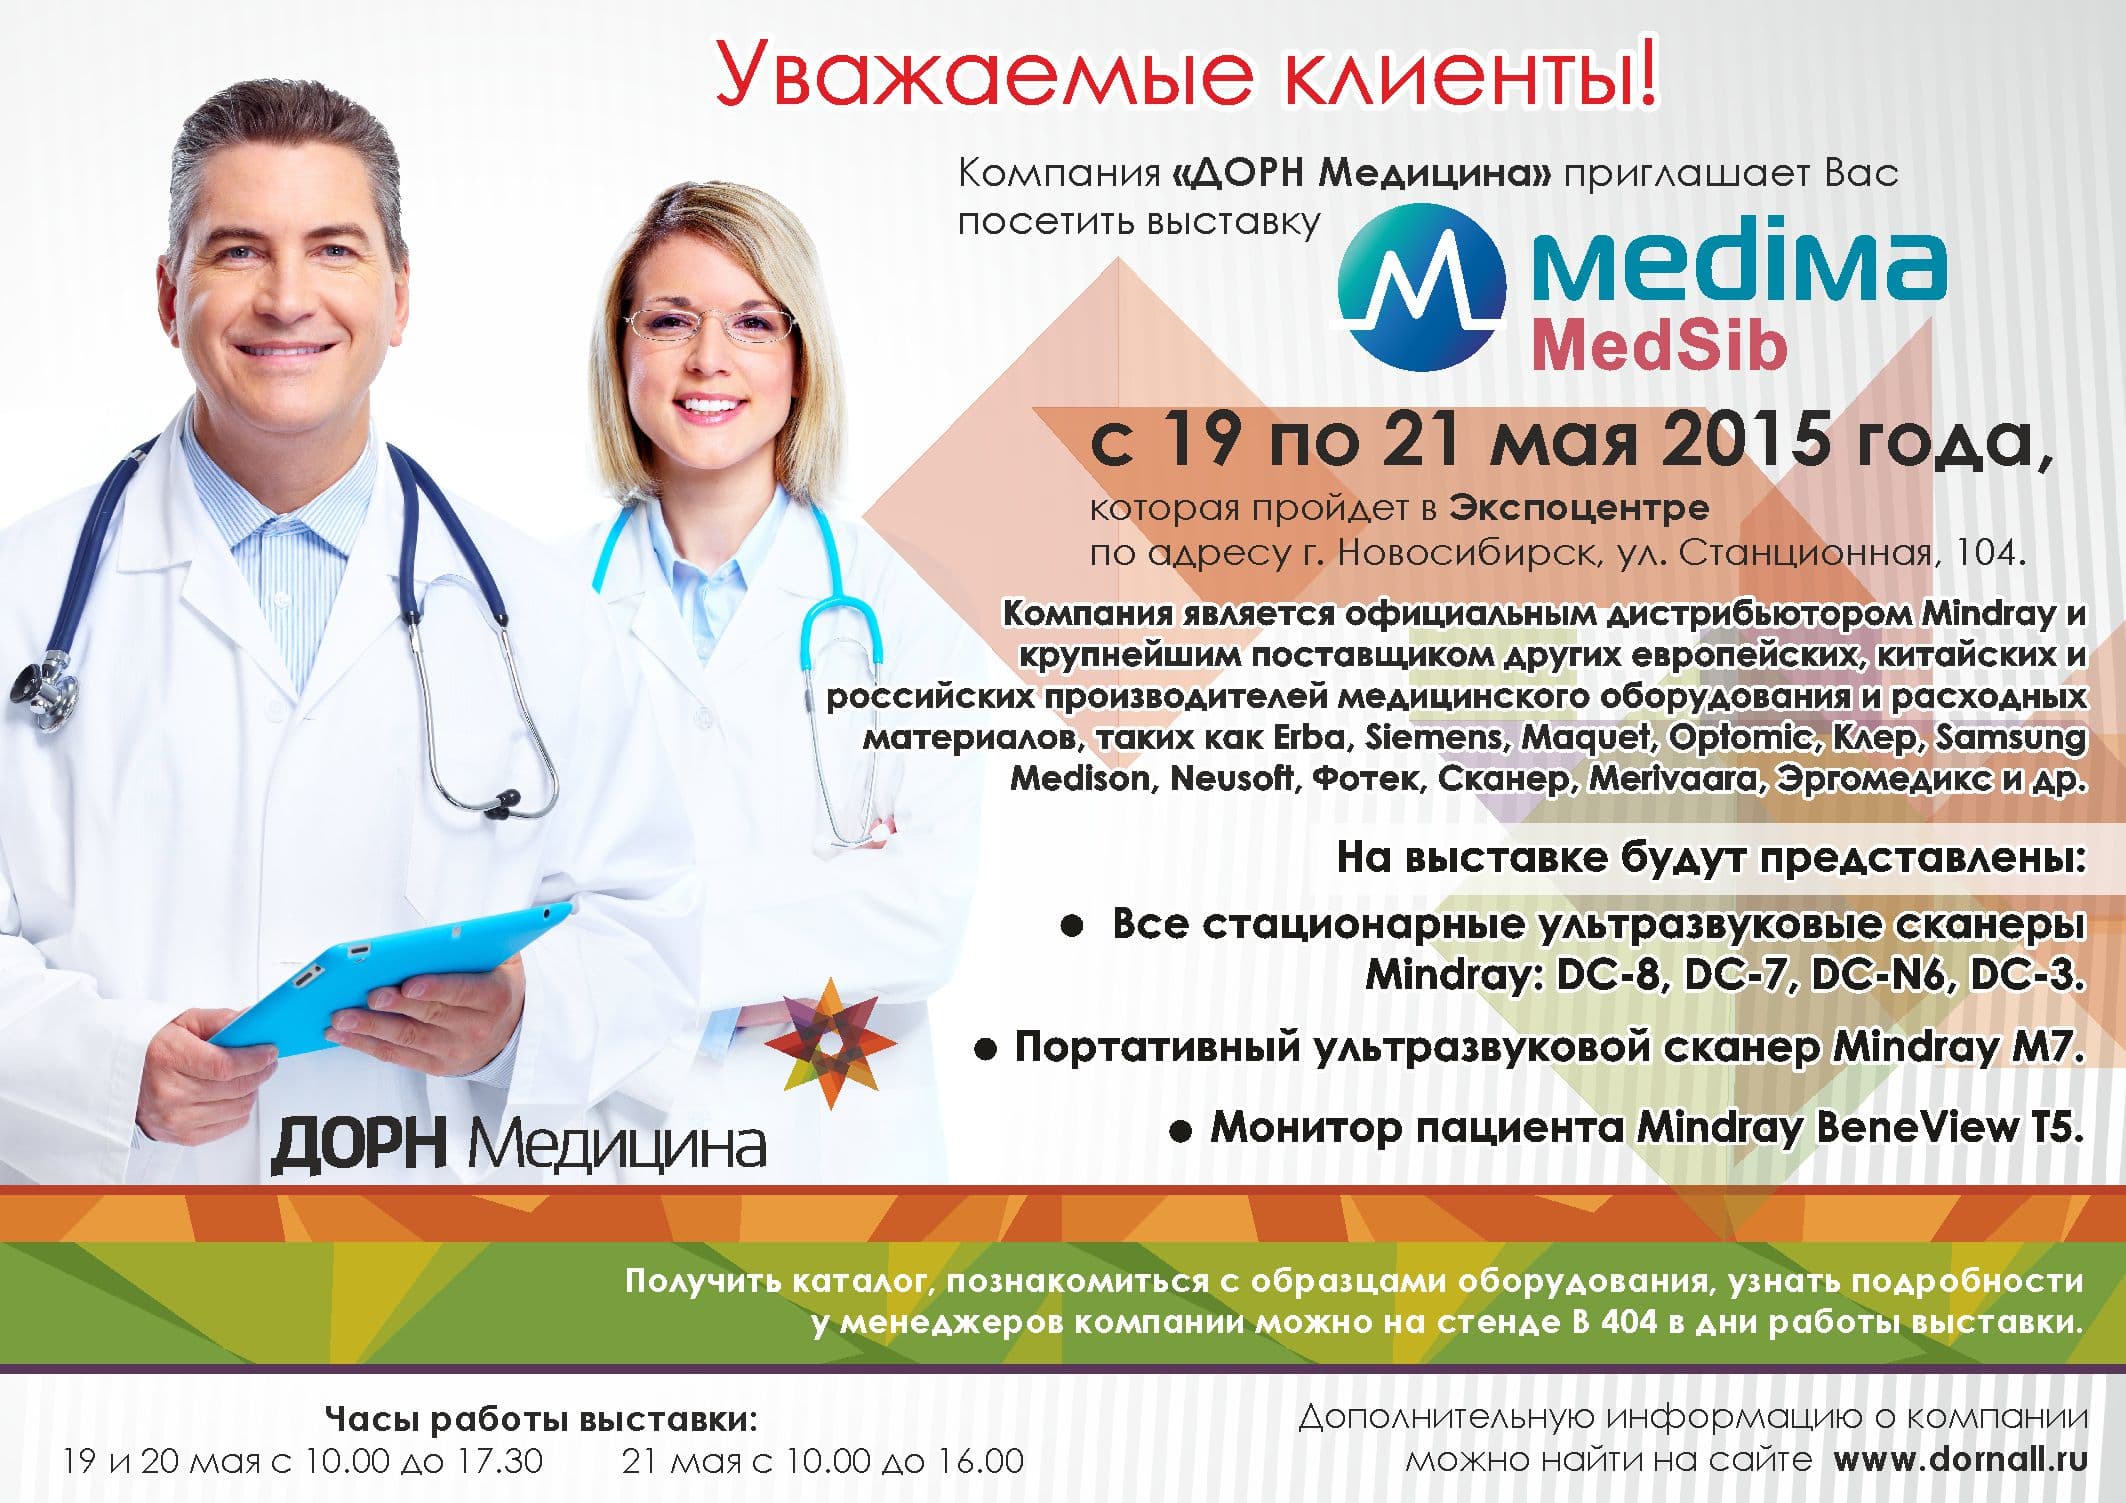 Компания "ДОРН Медицина" - участник Международной медицинской выставки "Медима Сибирь"